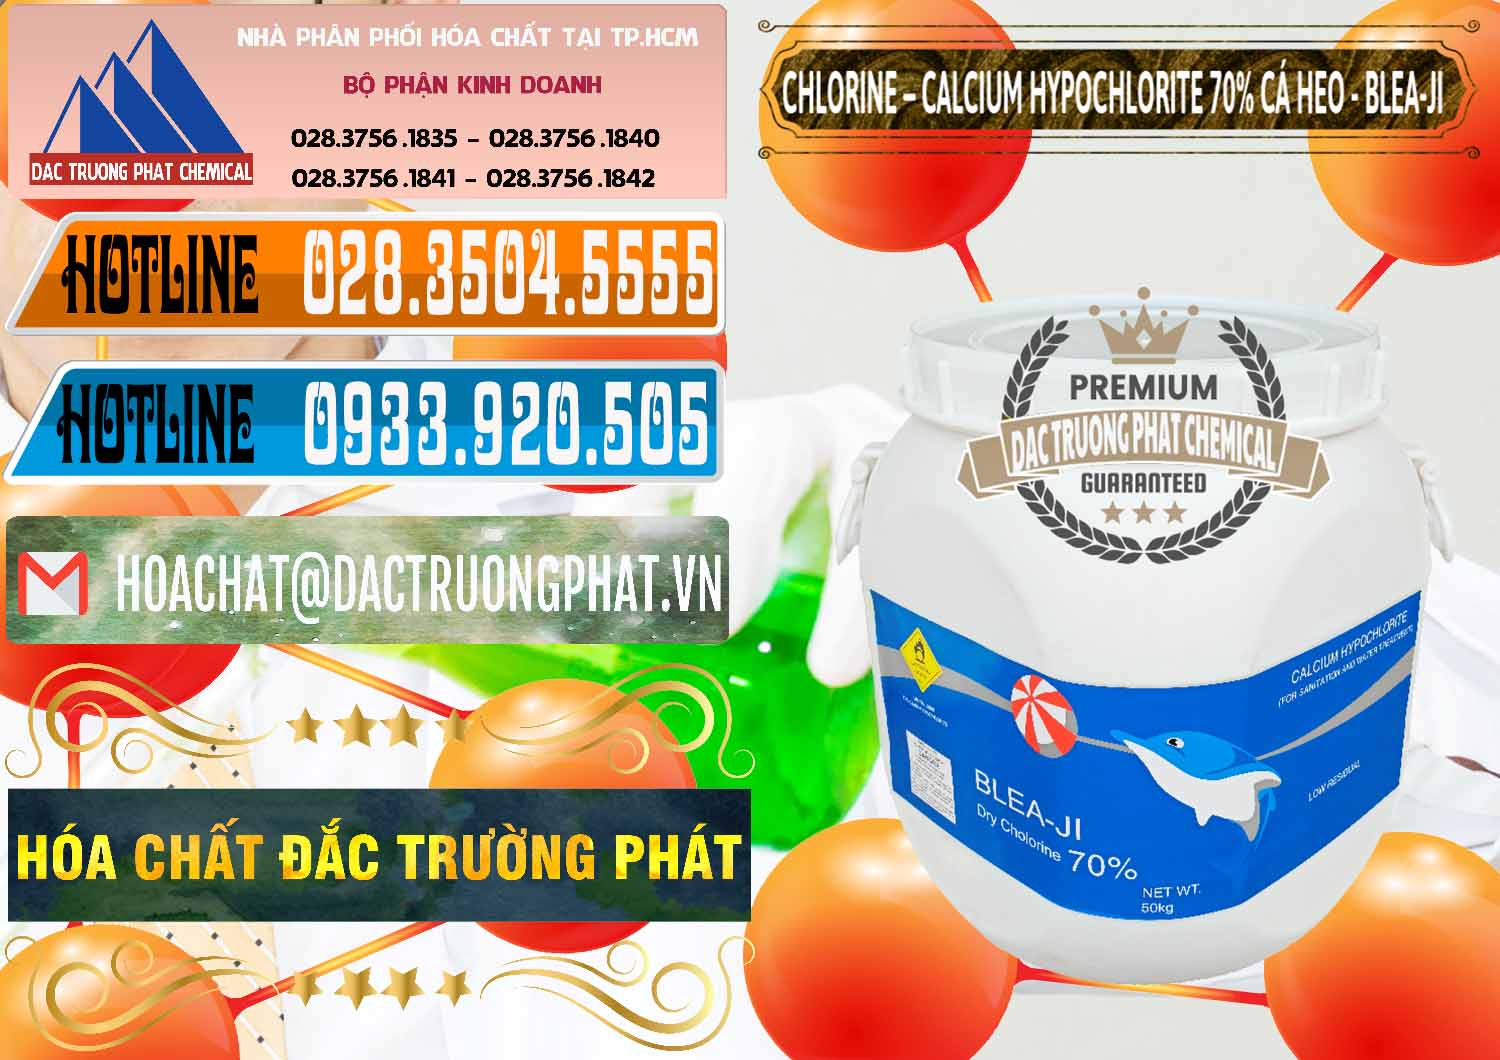 Công ty cung cấp - bán Clorin - Chlorine Cá Heo 70% Blea-Ji Trung Quốc China - 0056 - Công ty phân phối - cung cấp hóa chất tại TP.HCM - stmp.net